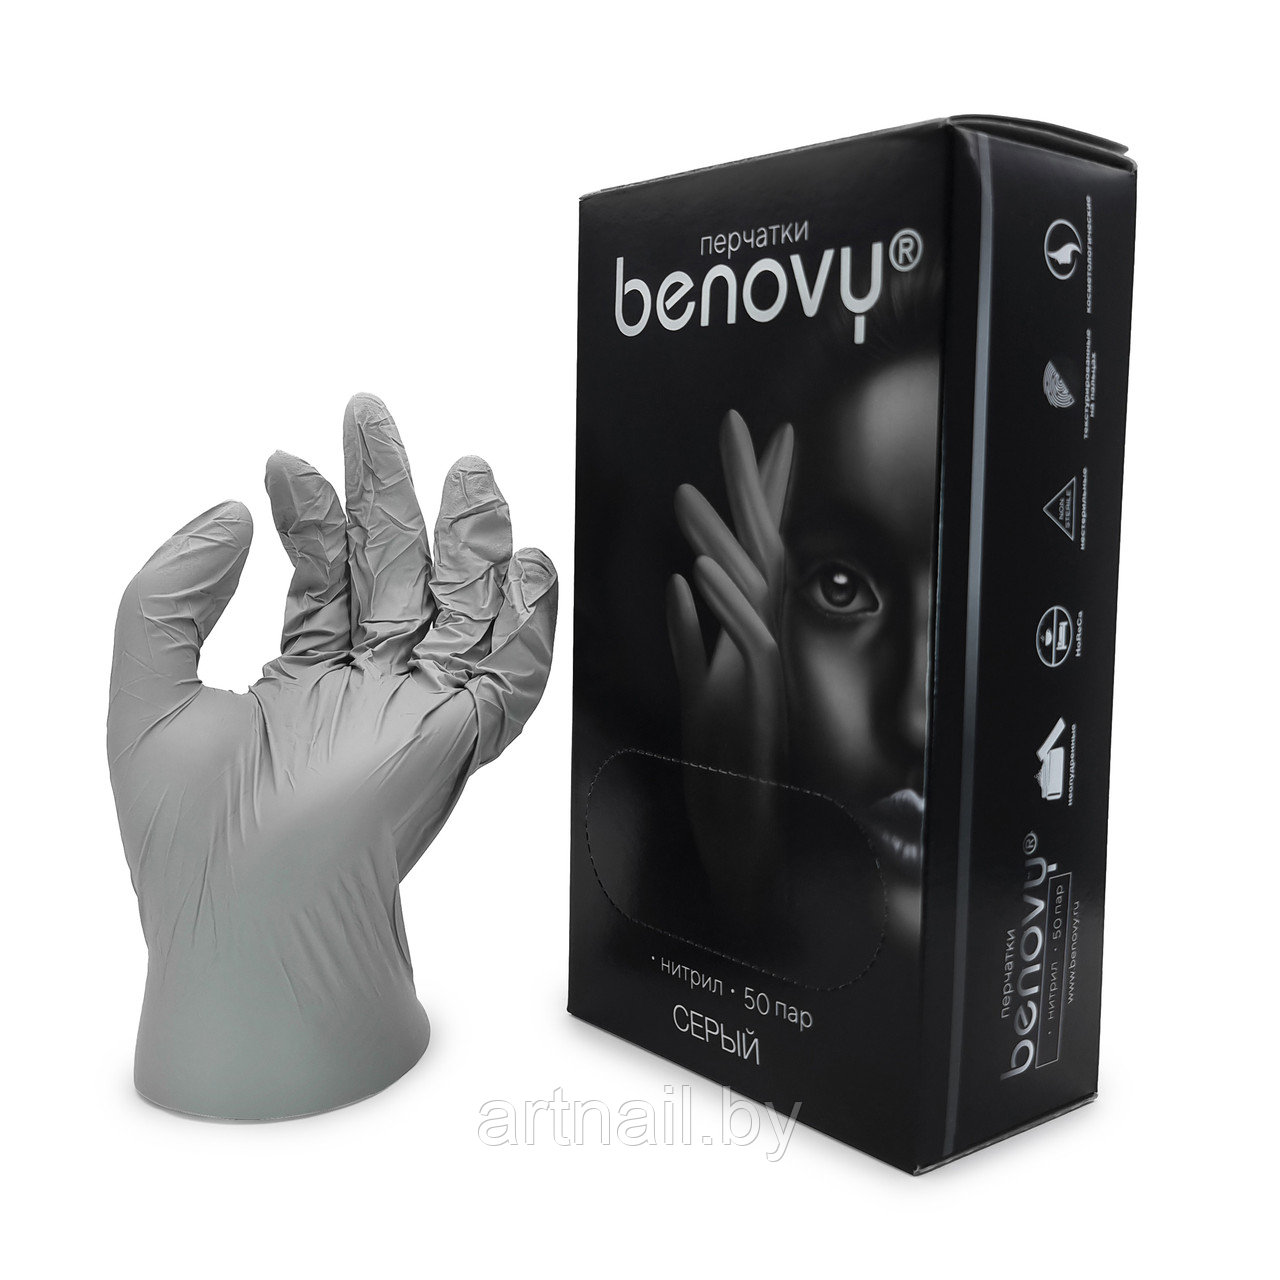 Перчатки нитриловые Benovy,размер L, серые, 100шт/уп. (50 пар)